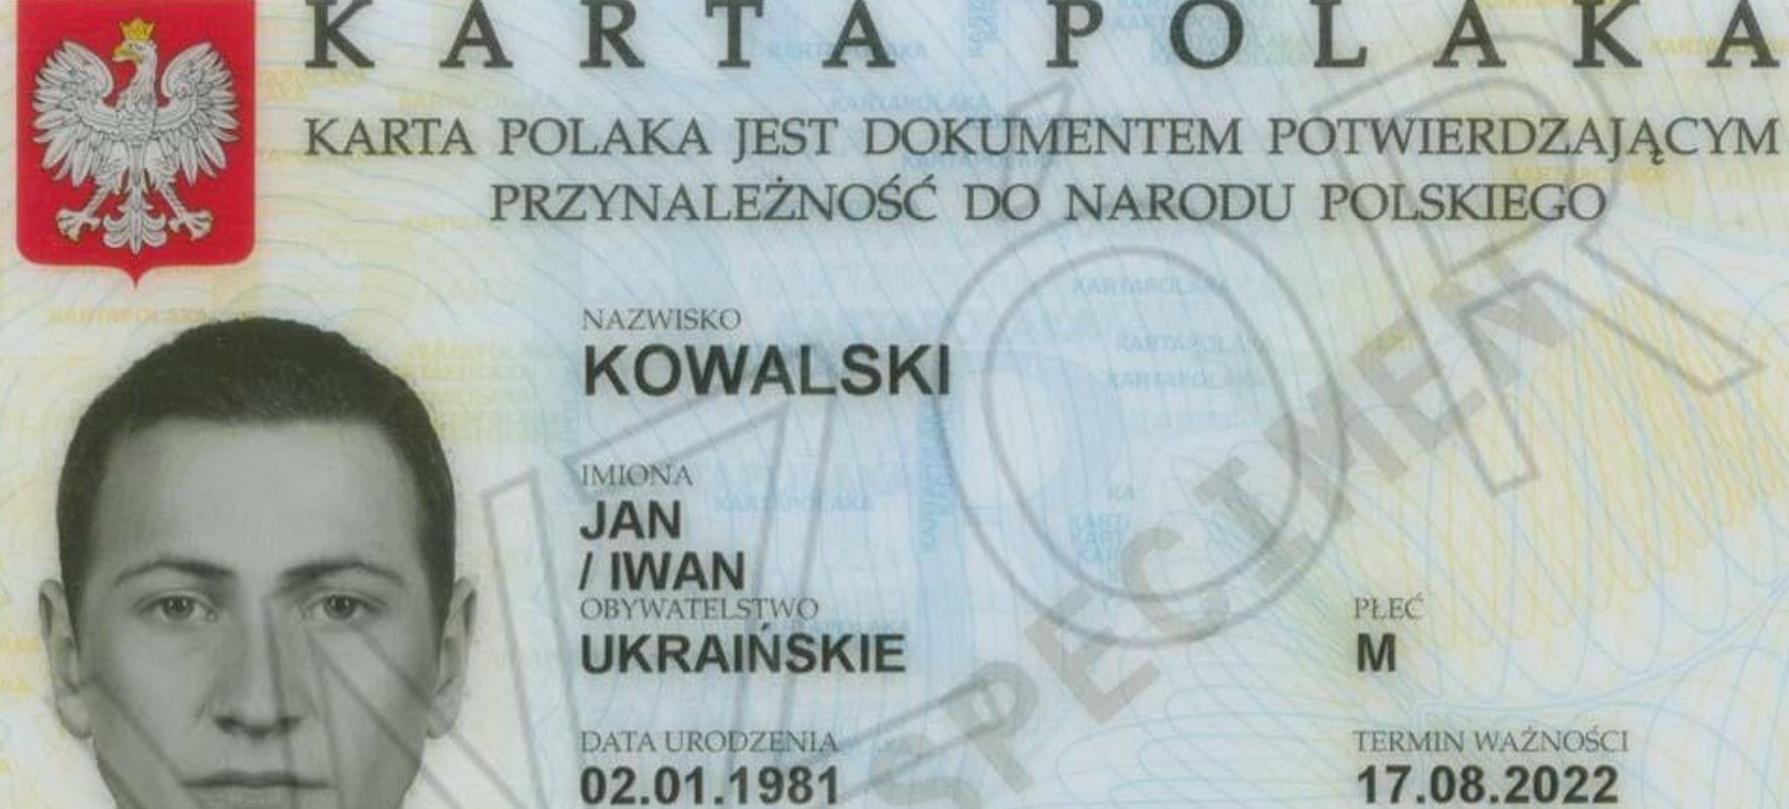 Karta Polaka to dokument potwierdzający przynależność do narodu polskiego (fot. gov.pl)